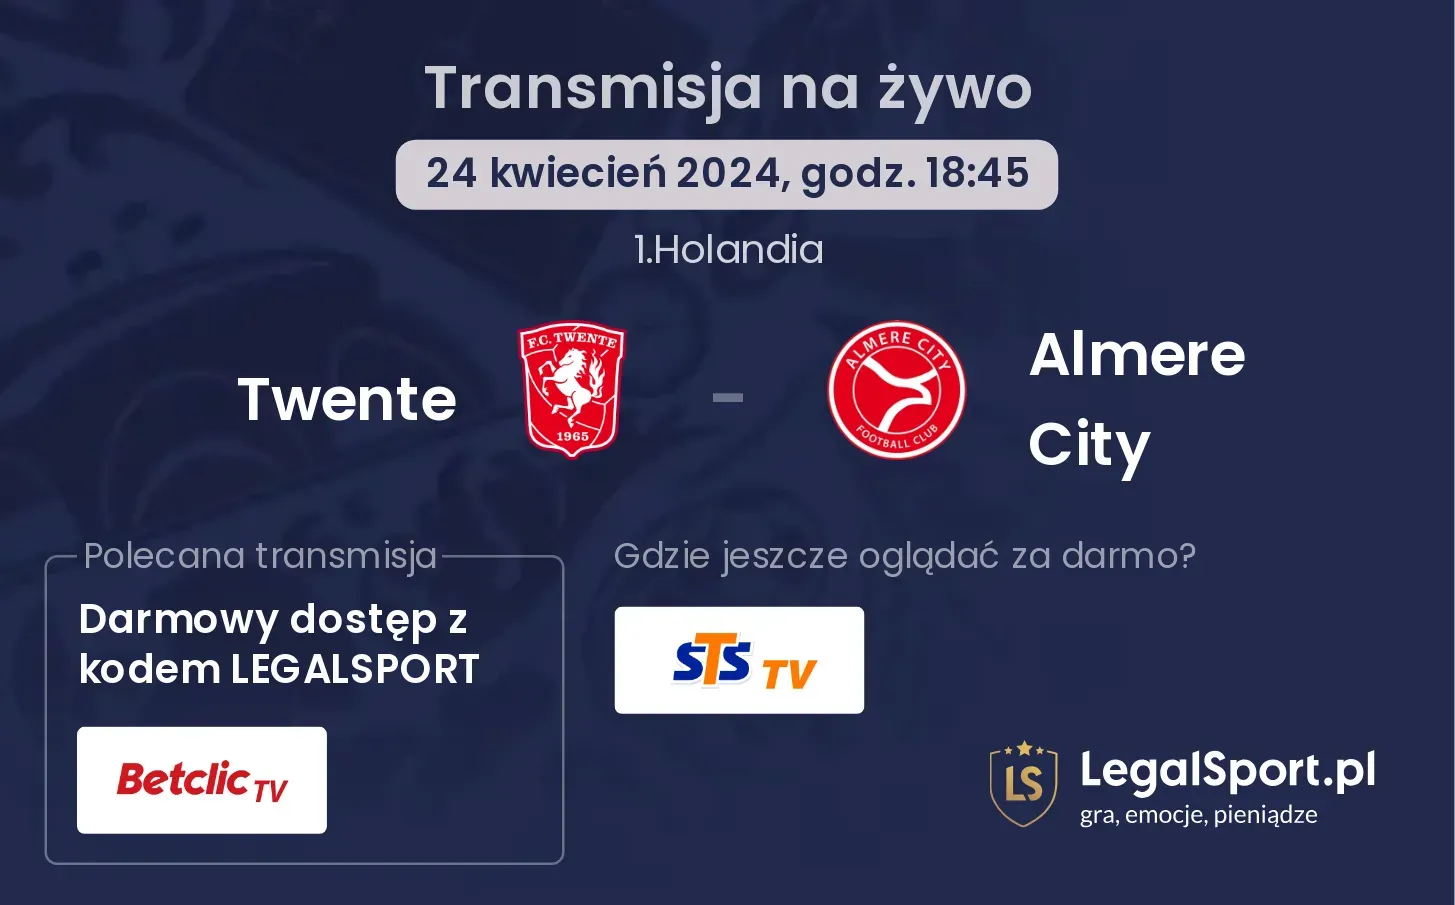 Twente - Almere City transmisja na żywo